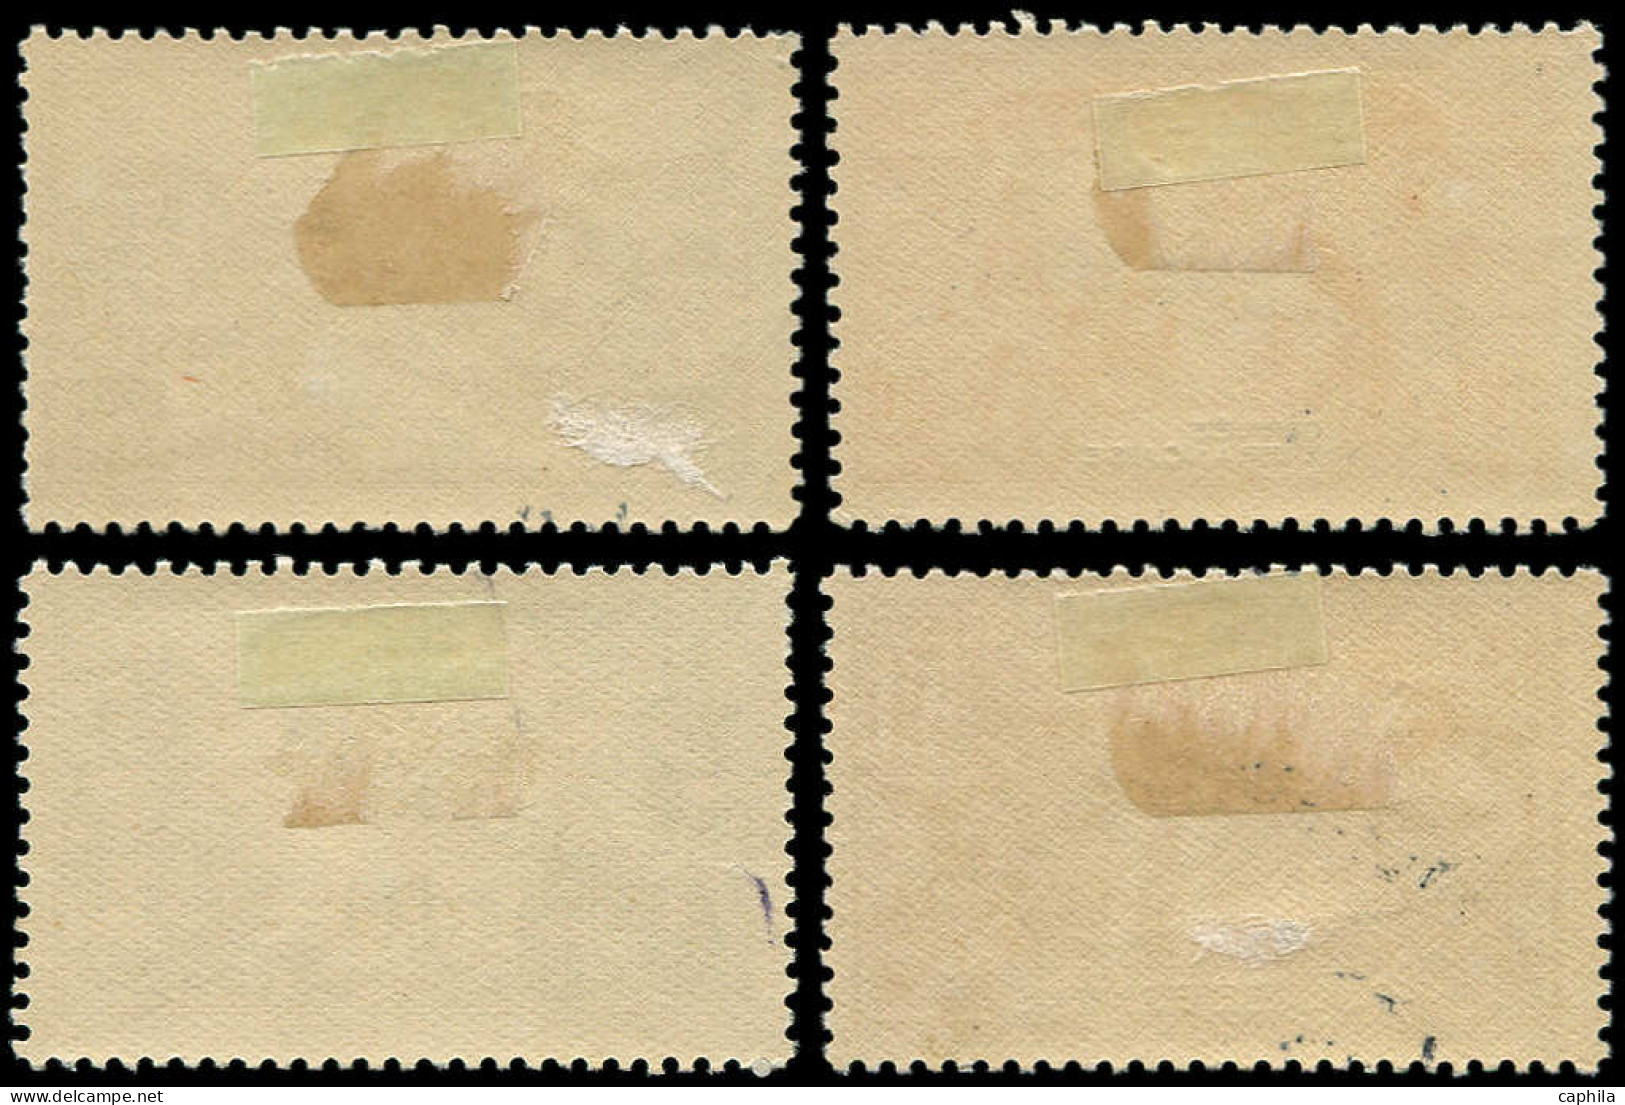 * GUINEE - Poste - 115/118, Surchargés "Espècimen": Expo De 1931 - Unused Stamps